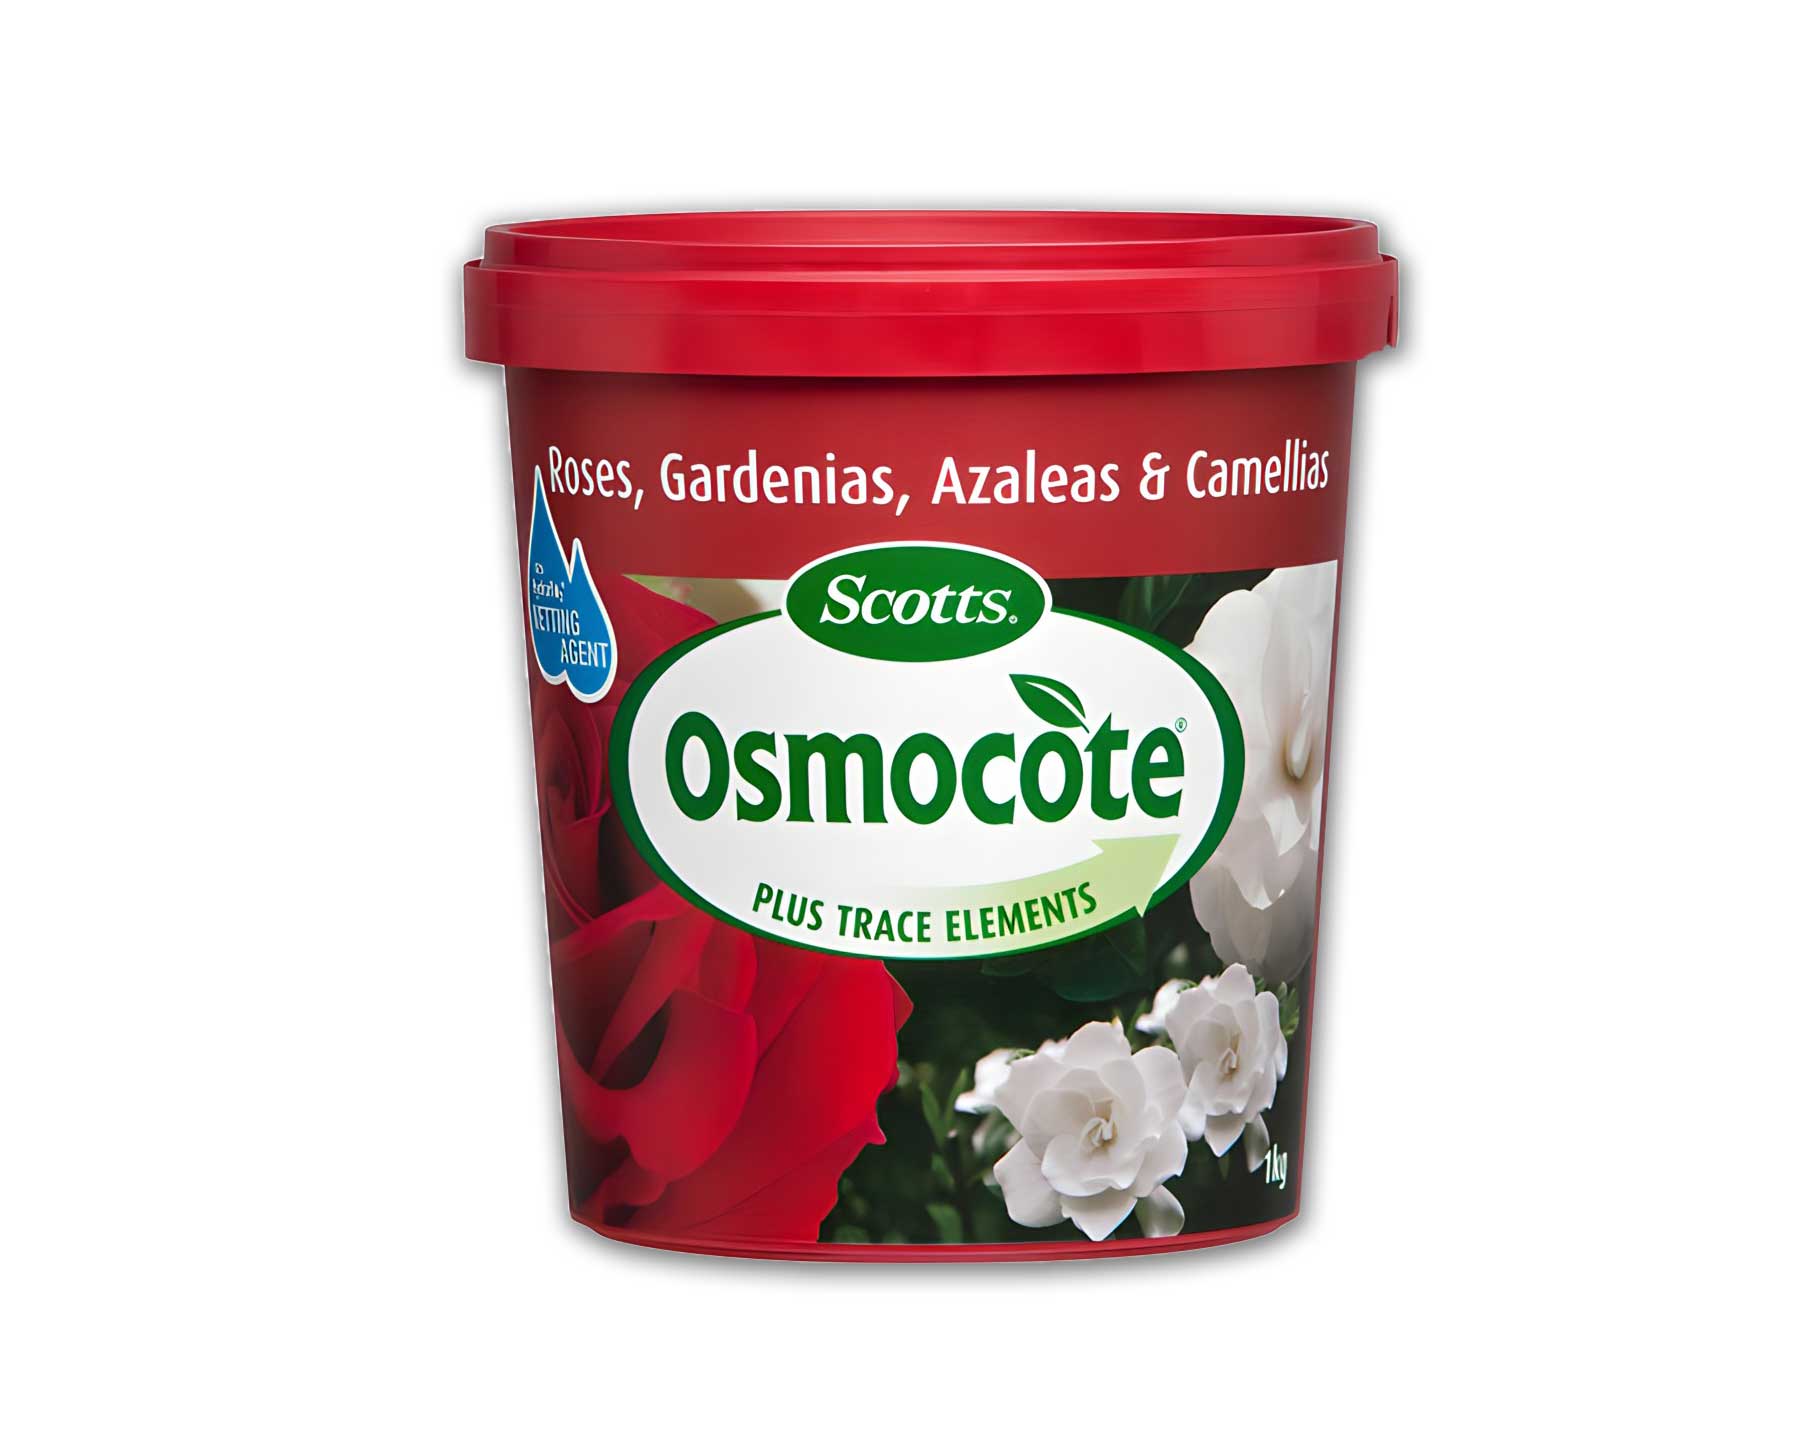 Osmocote Rose, Gardenia, Azalea and Camellia Food